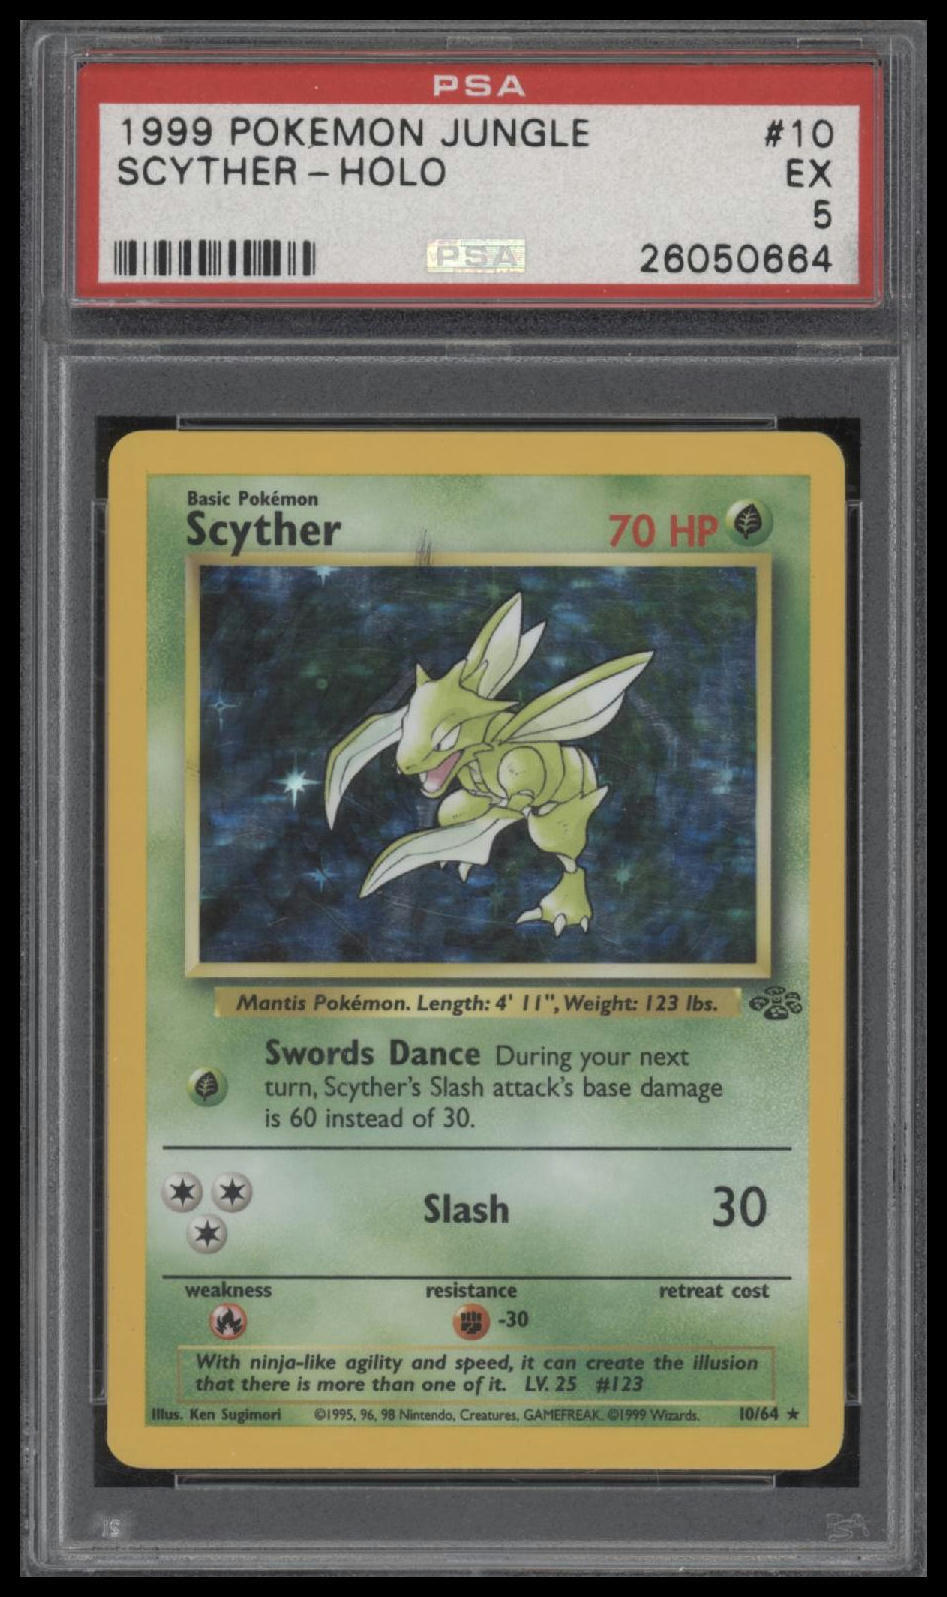 1999 Pokemon Jungle #10 Scyther-Holo PSA 5